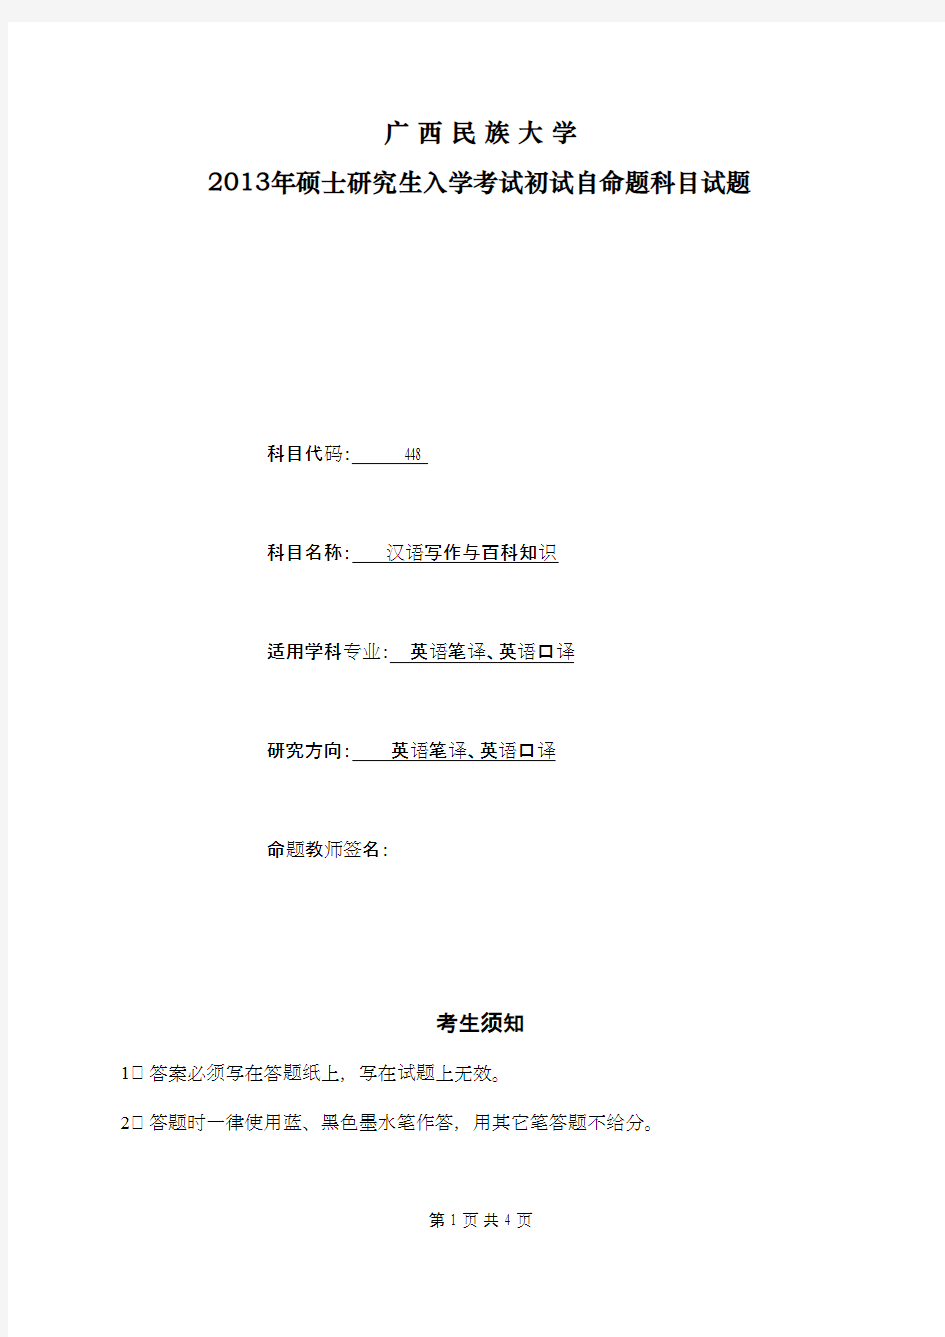 广西民族大学汉语写作与百科知识2013年考研专业课初试真题